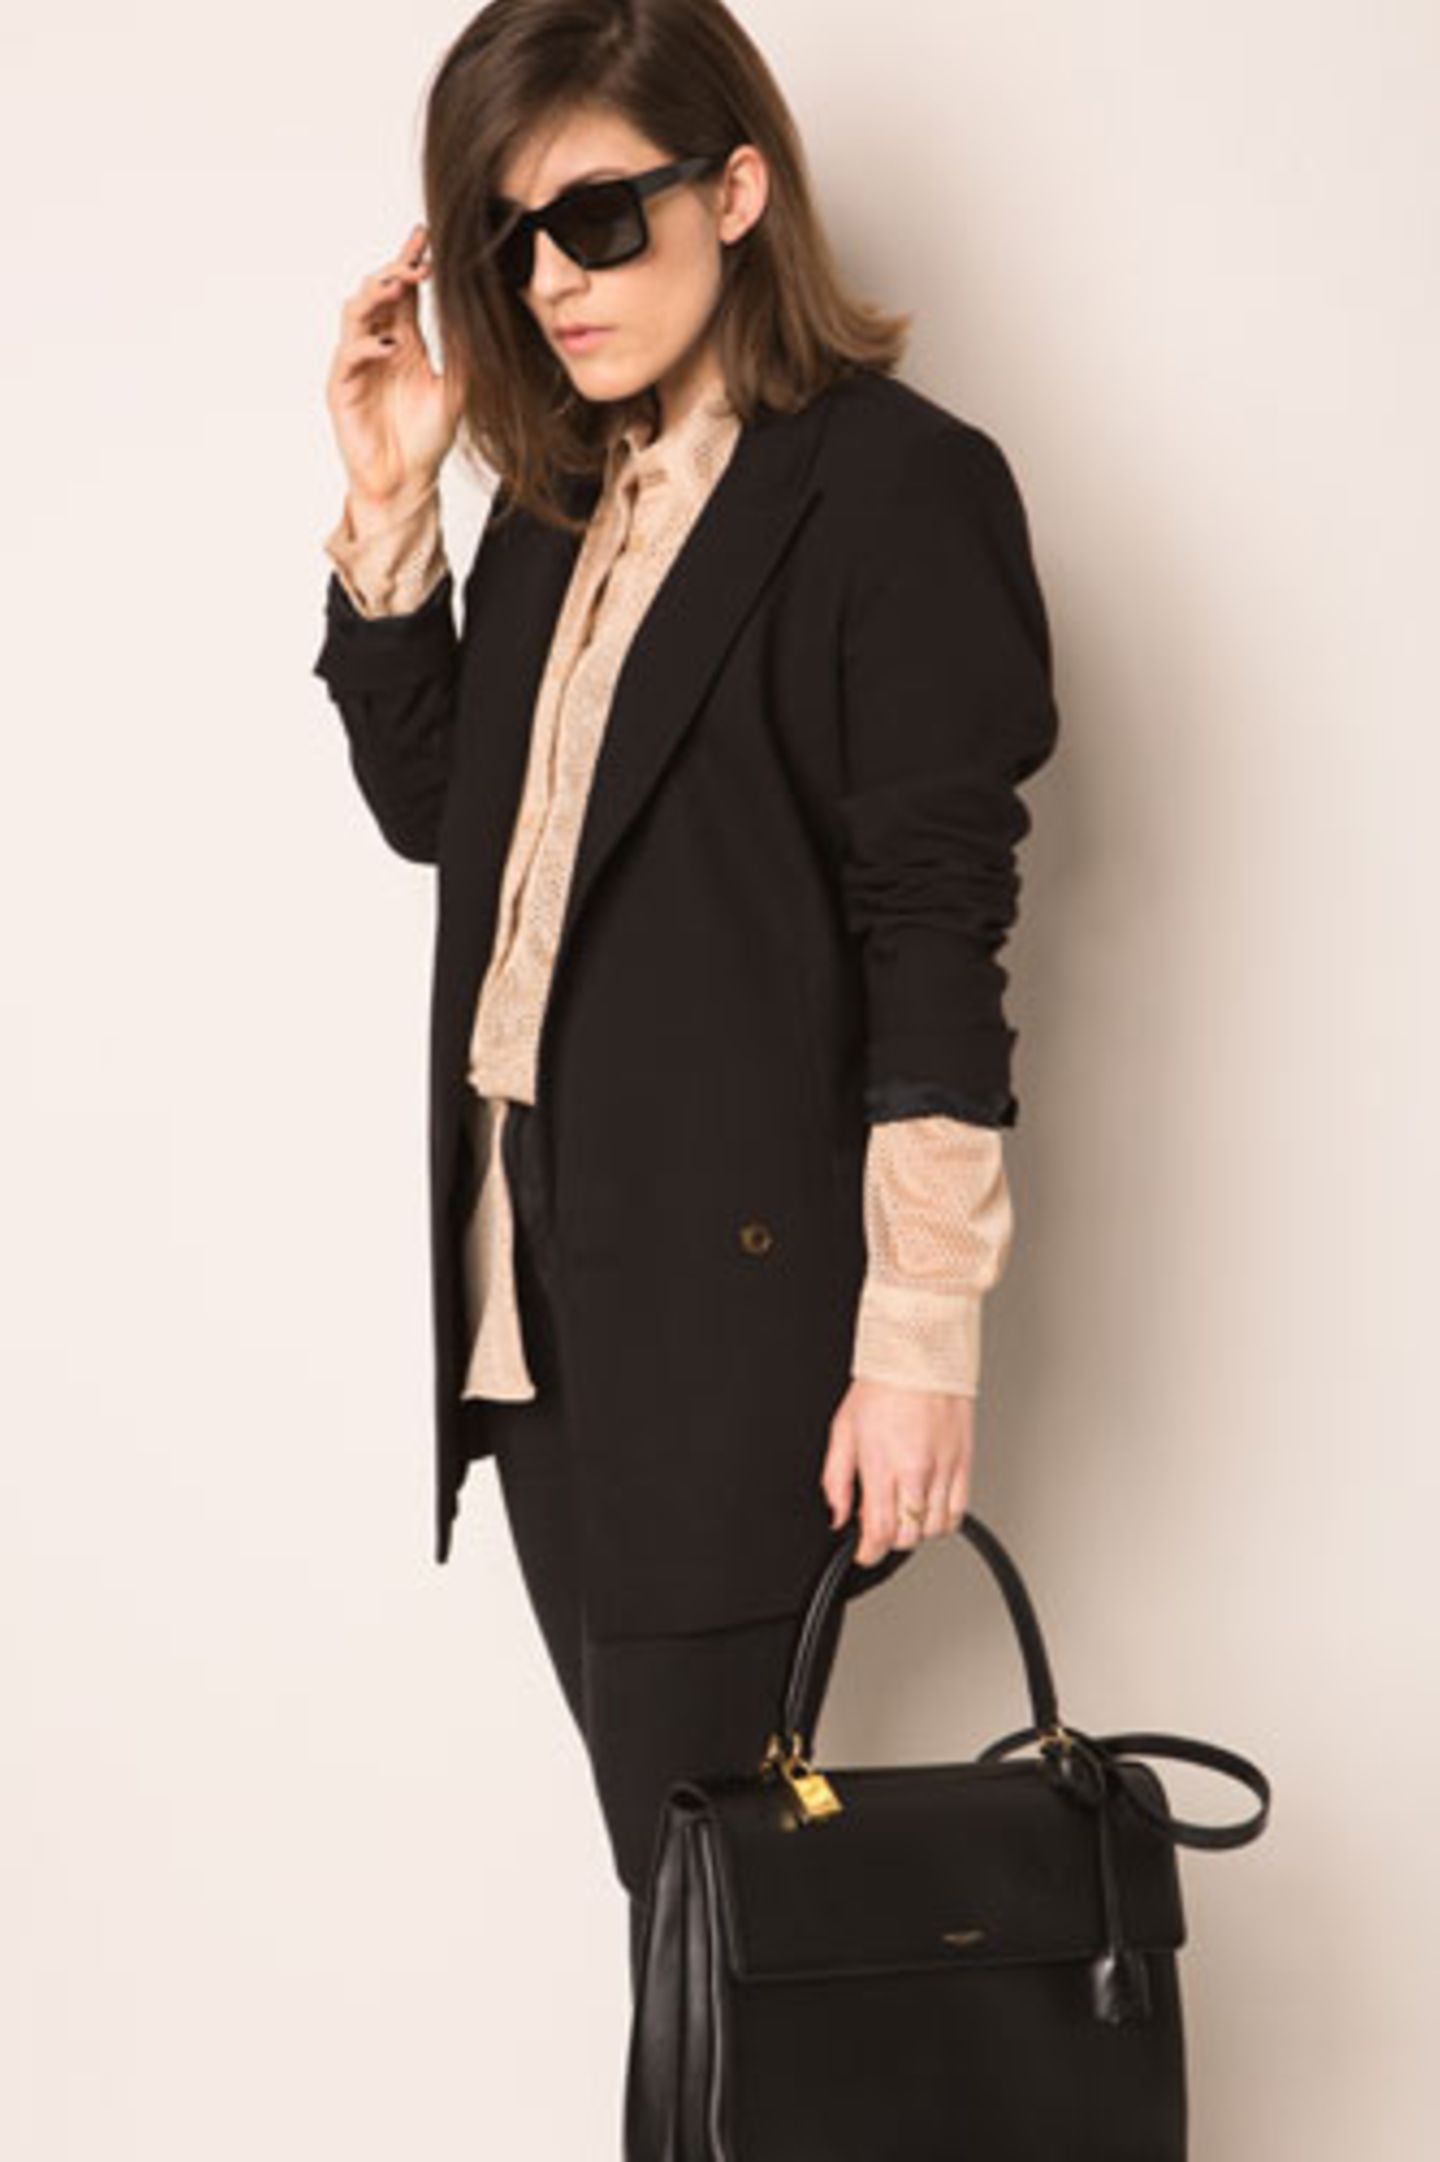 Carolas zweiter Look: eine lässige Kombi aus schwarzem Blazer, cremefarbener Bluse und Sonnenbrille.